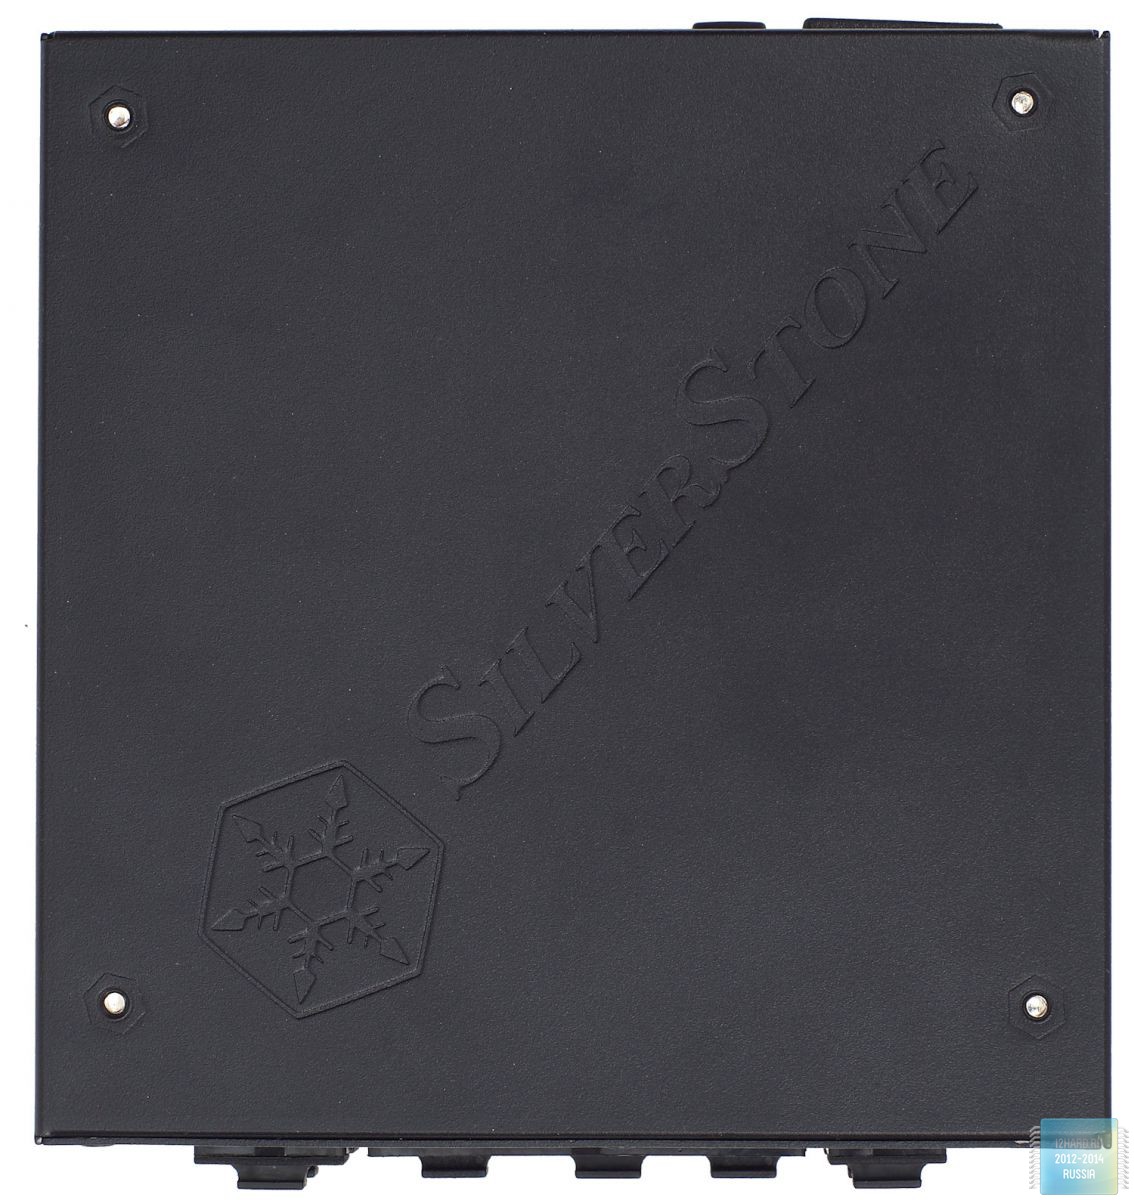 Внешний вид SFX-L блока питания SilverStone SX700-LPT